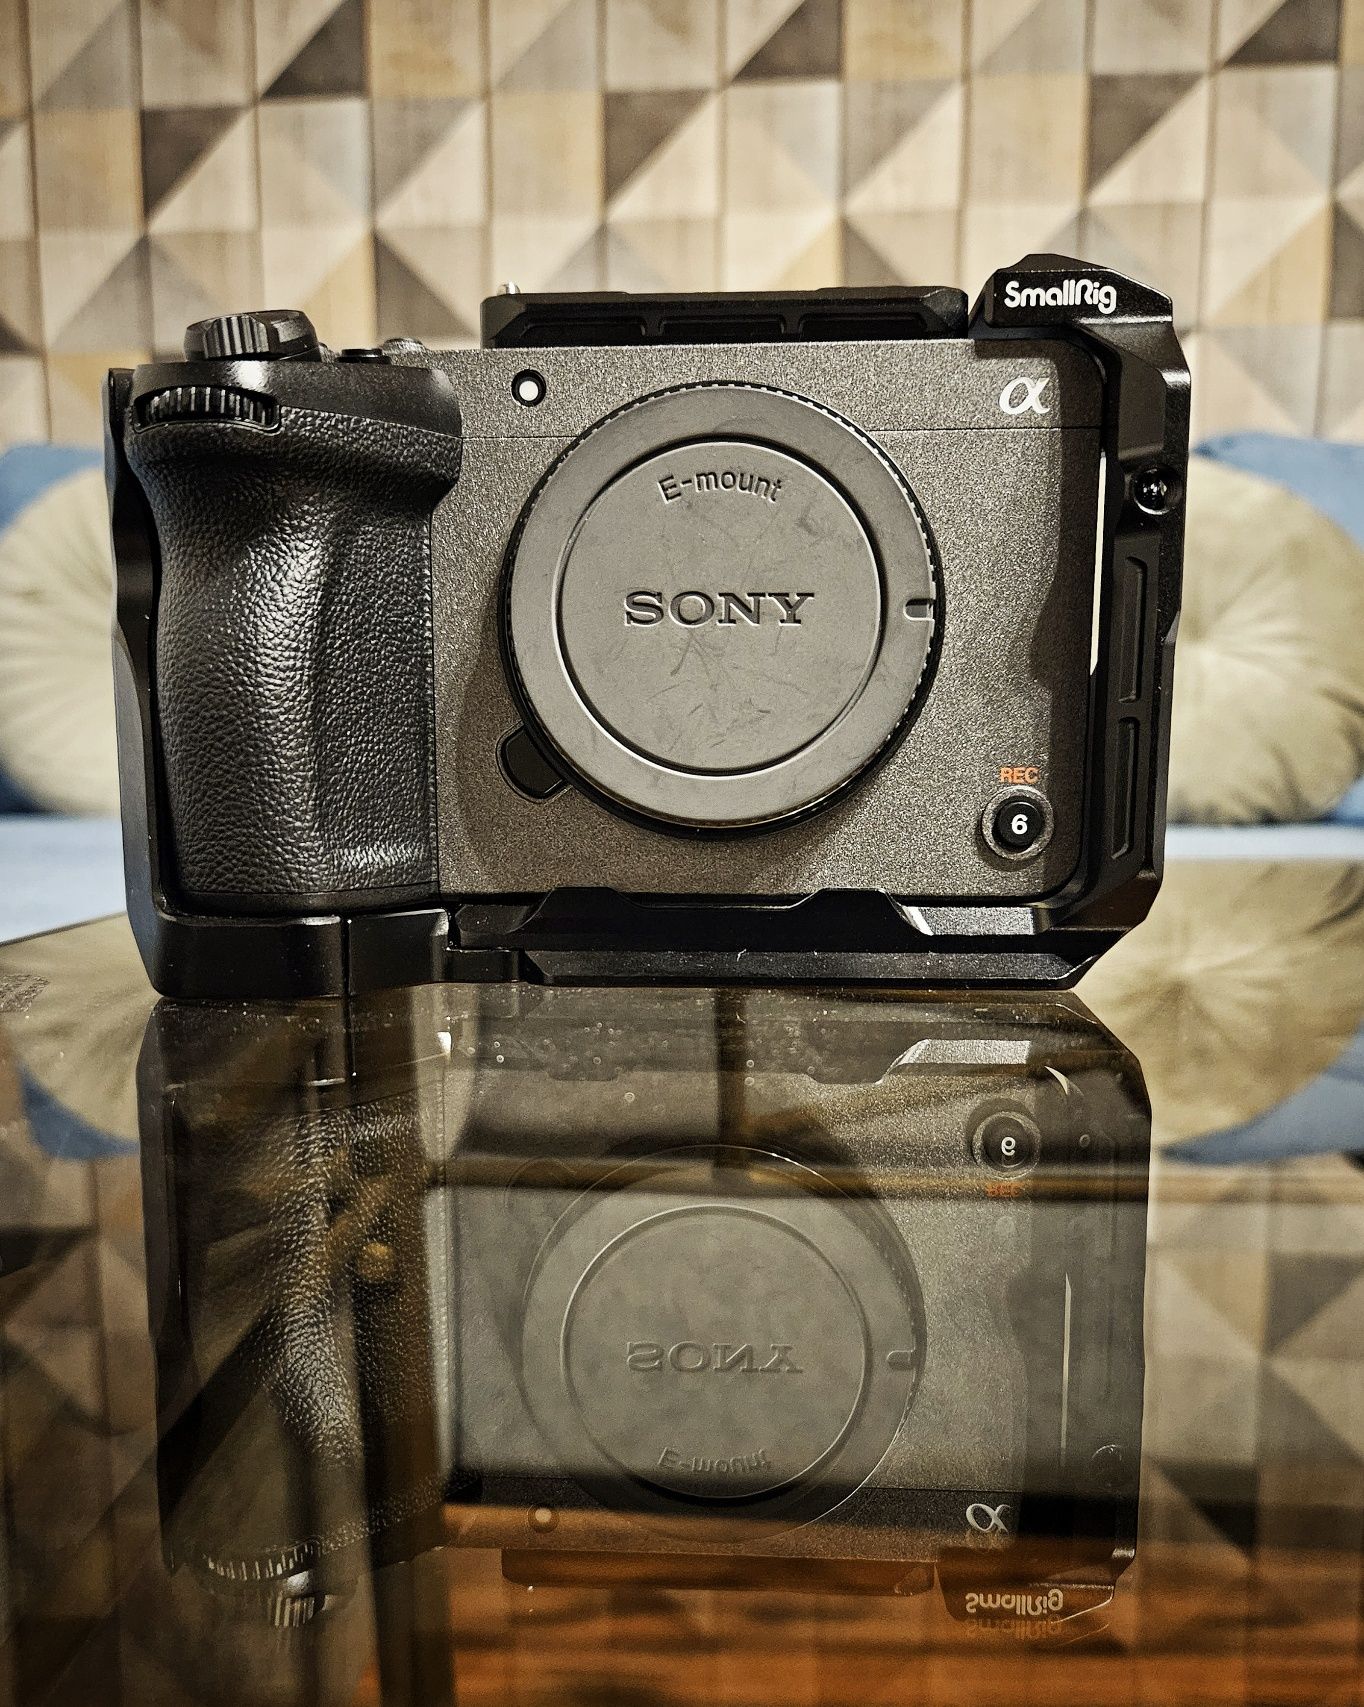 Sony fx30 + accesorii